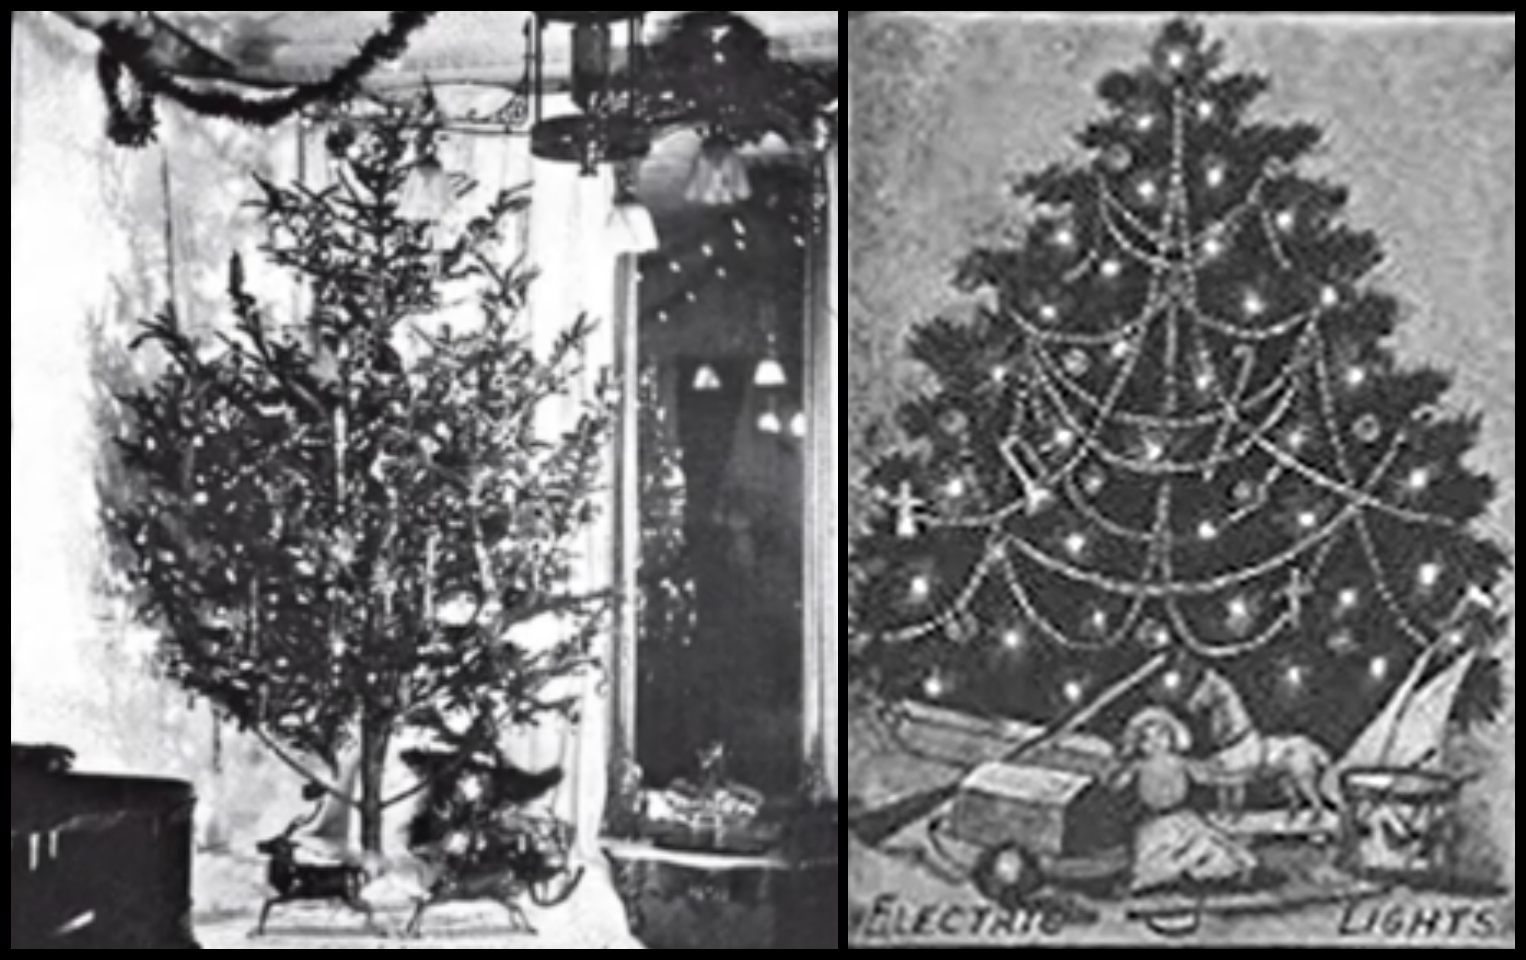 Τα πρώτα φώτα σε δέντρο μπήκαν για λόγους δημοσίων σχέσεων του Έντισον. Απλά έτυχε να είναι Χριστούγεννα